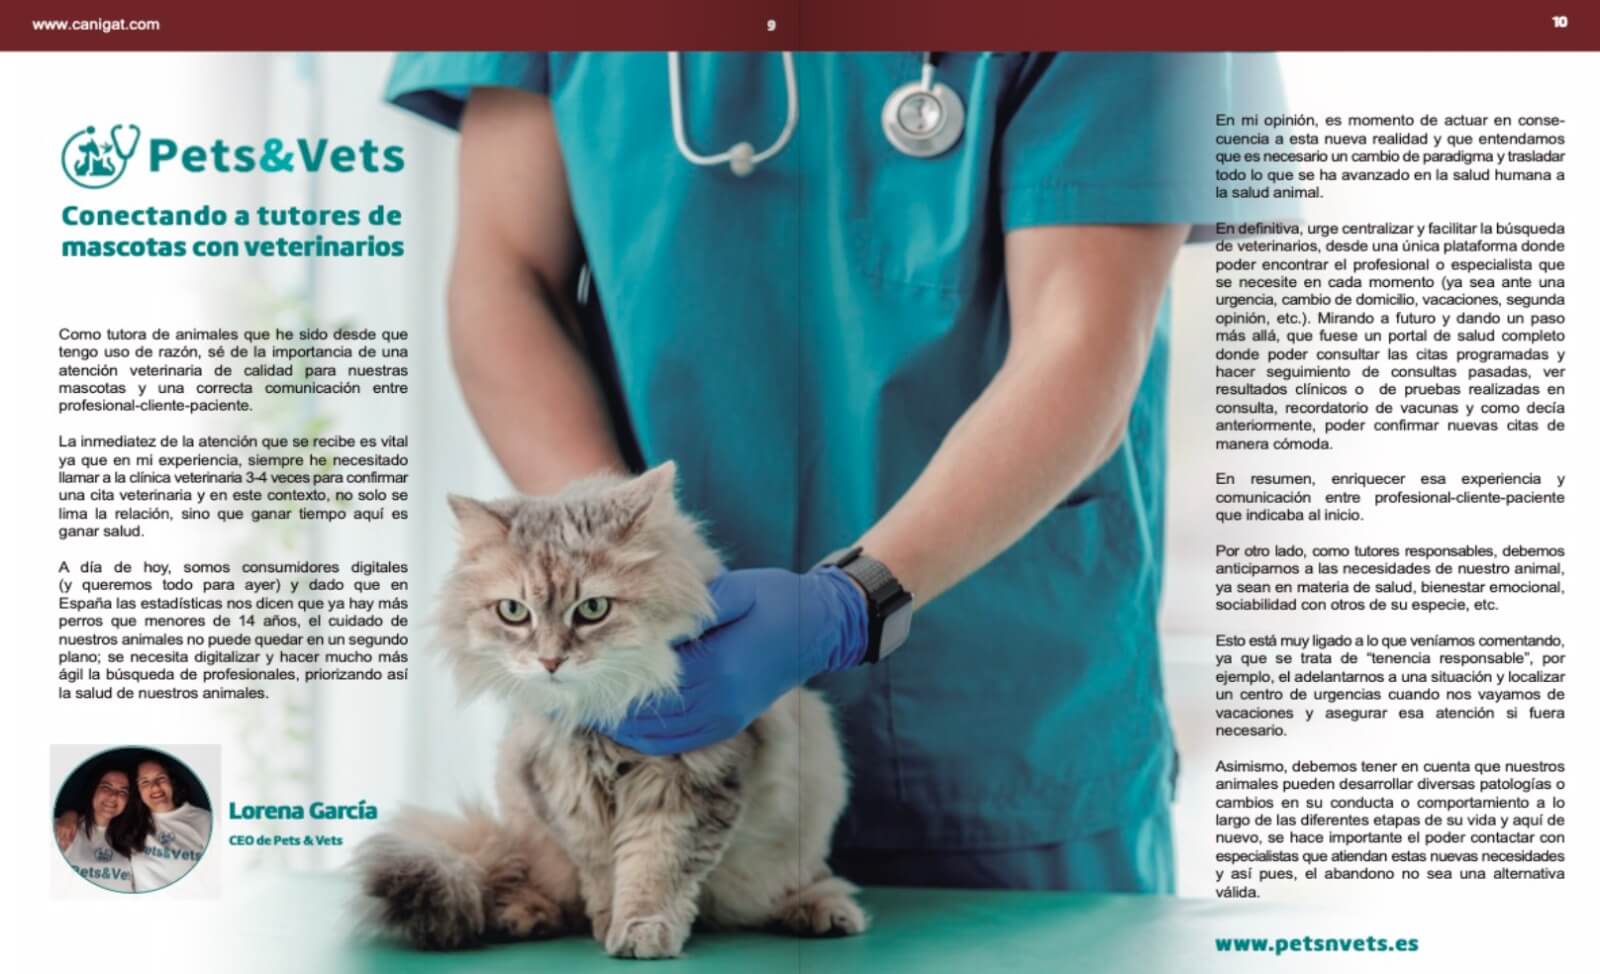 En Pets & Vets creemos que es necesario digitalizar el sector y ofrecer una plataforma de salud a nuestras mascotas y así poder brindar una mejor experiencia profesional-cliente-paciente.De esto y más hablamos en nuestro artículo que podéis leer en las páginas 9-10.